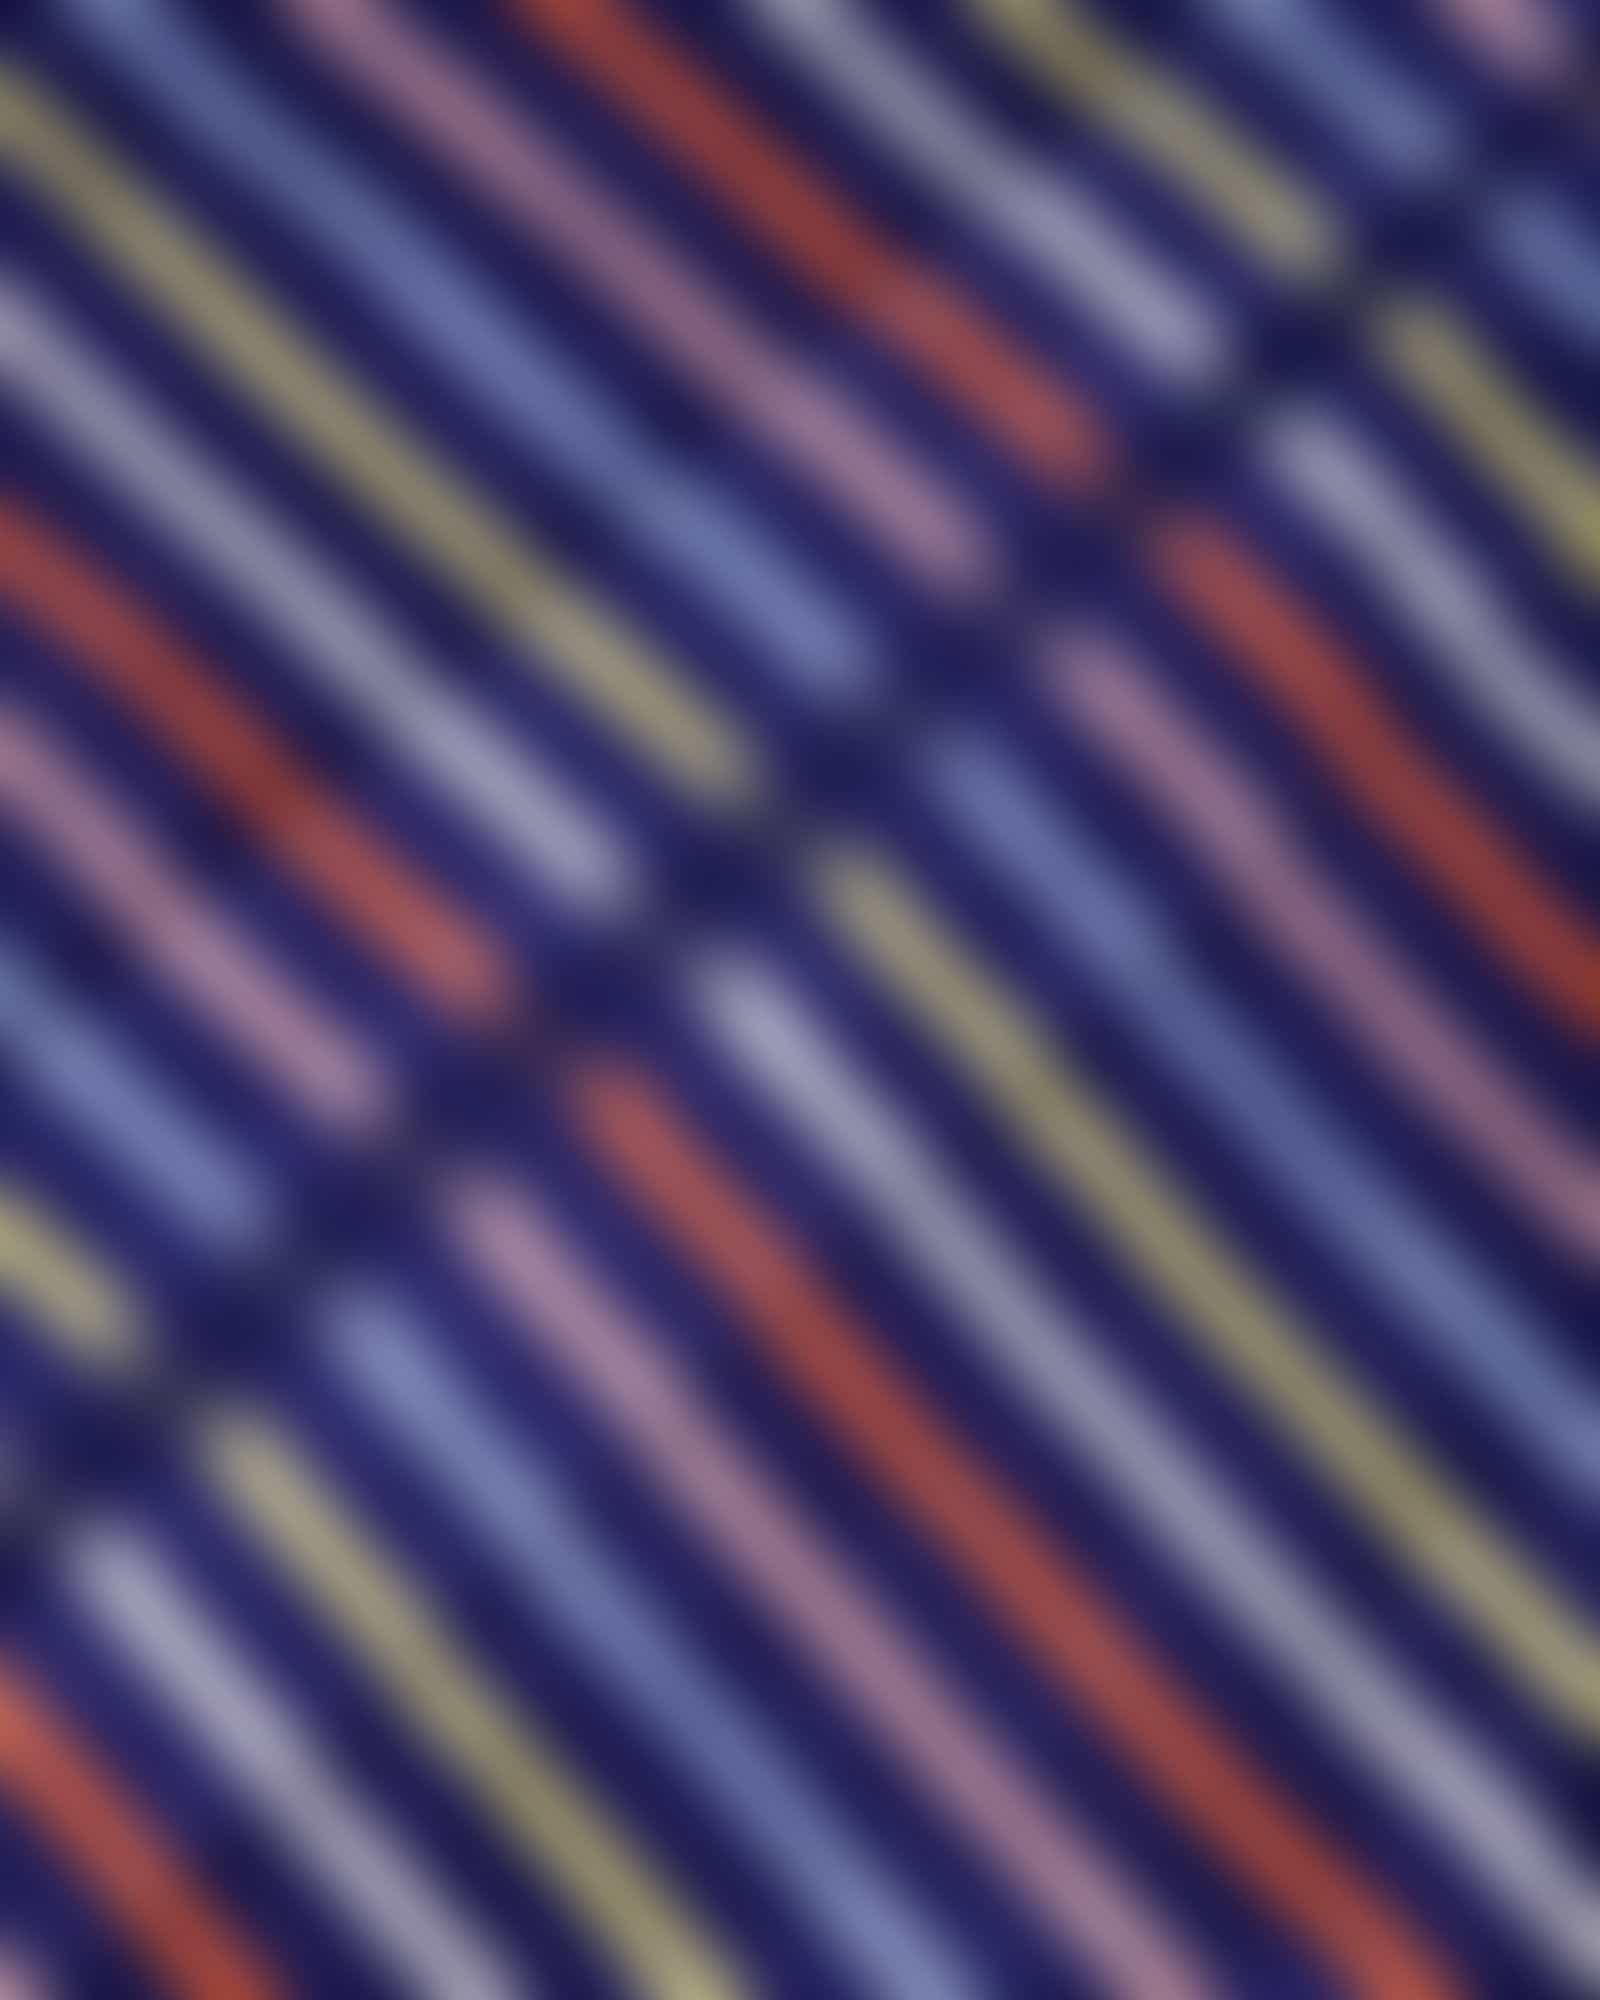 Cawö Damen Bademantel Kapuze 3344 - Farbe: blau-multicolor - 12 - S Detailbild 3